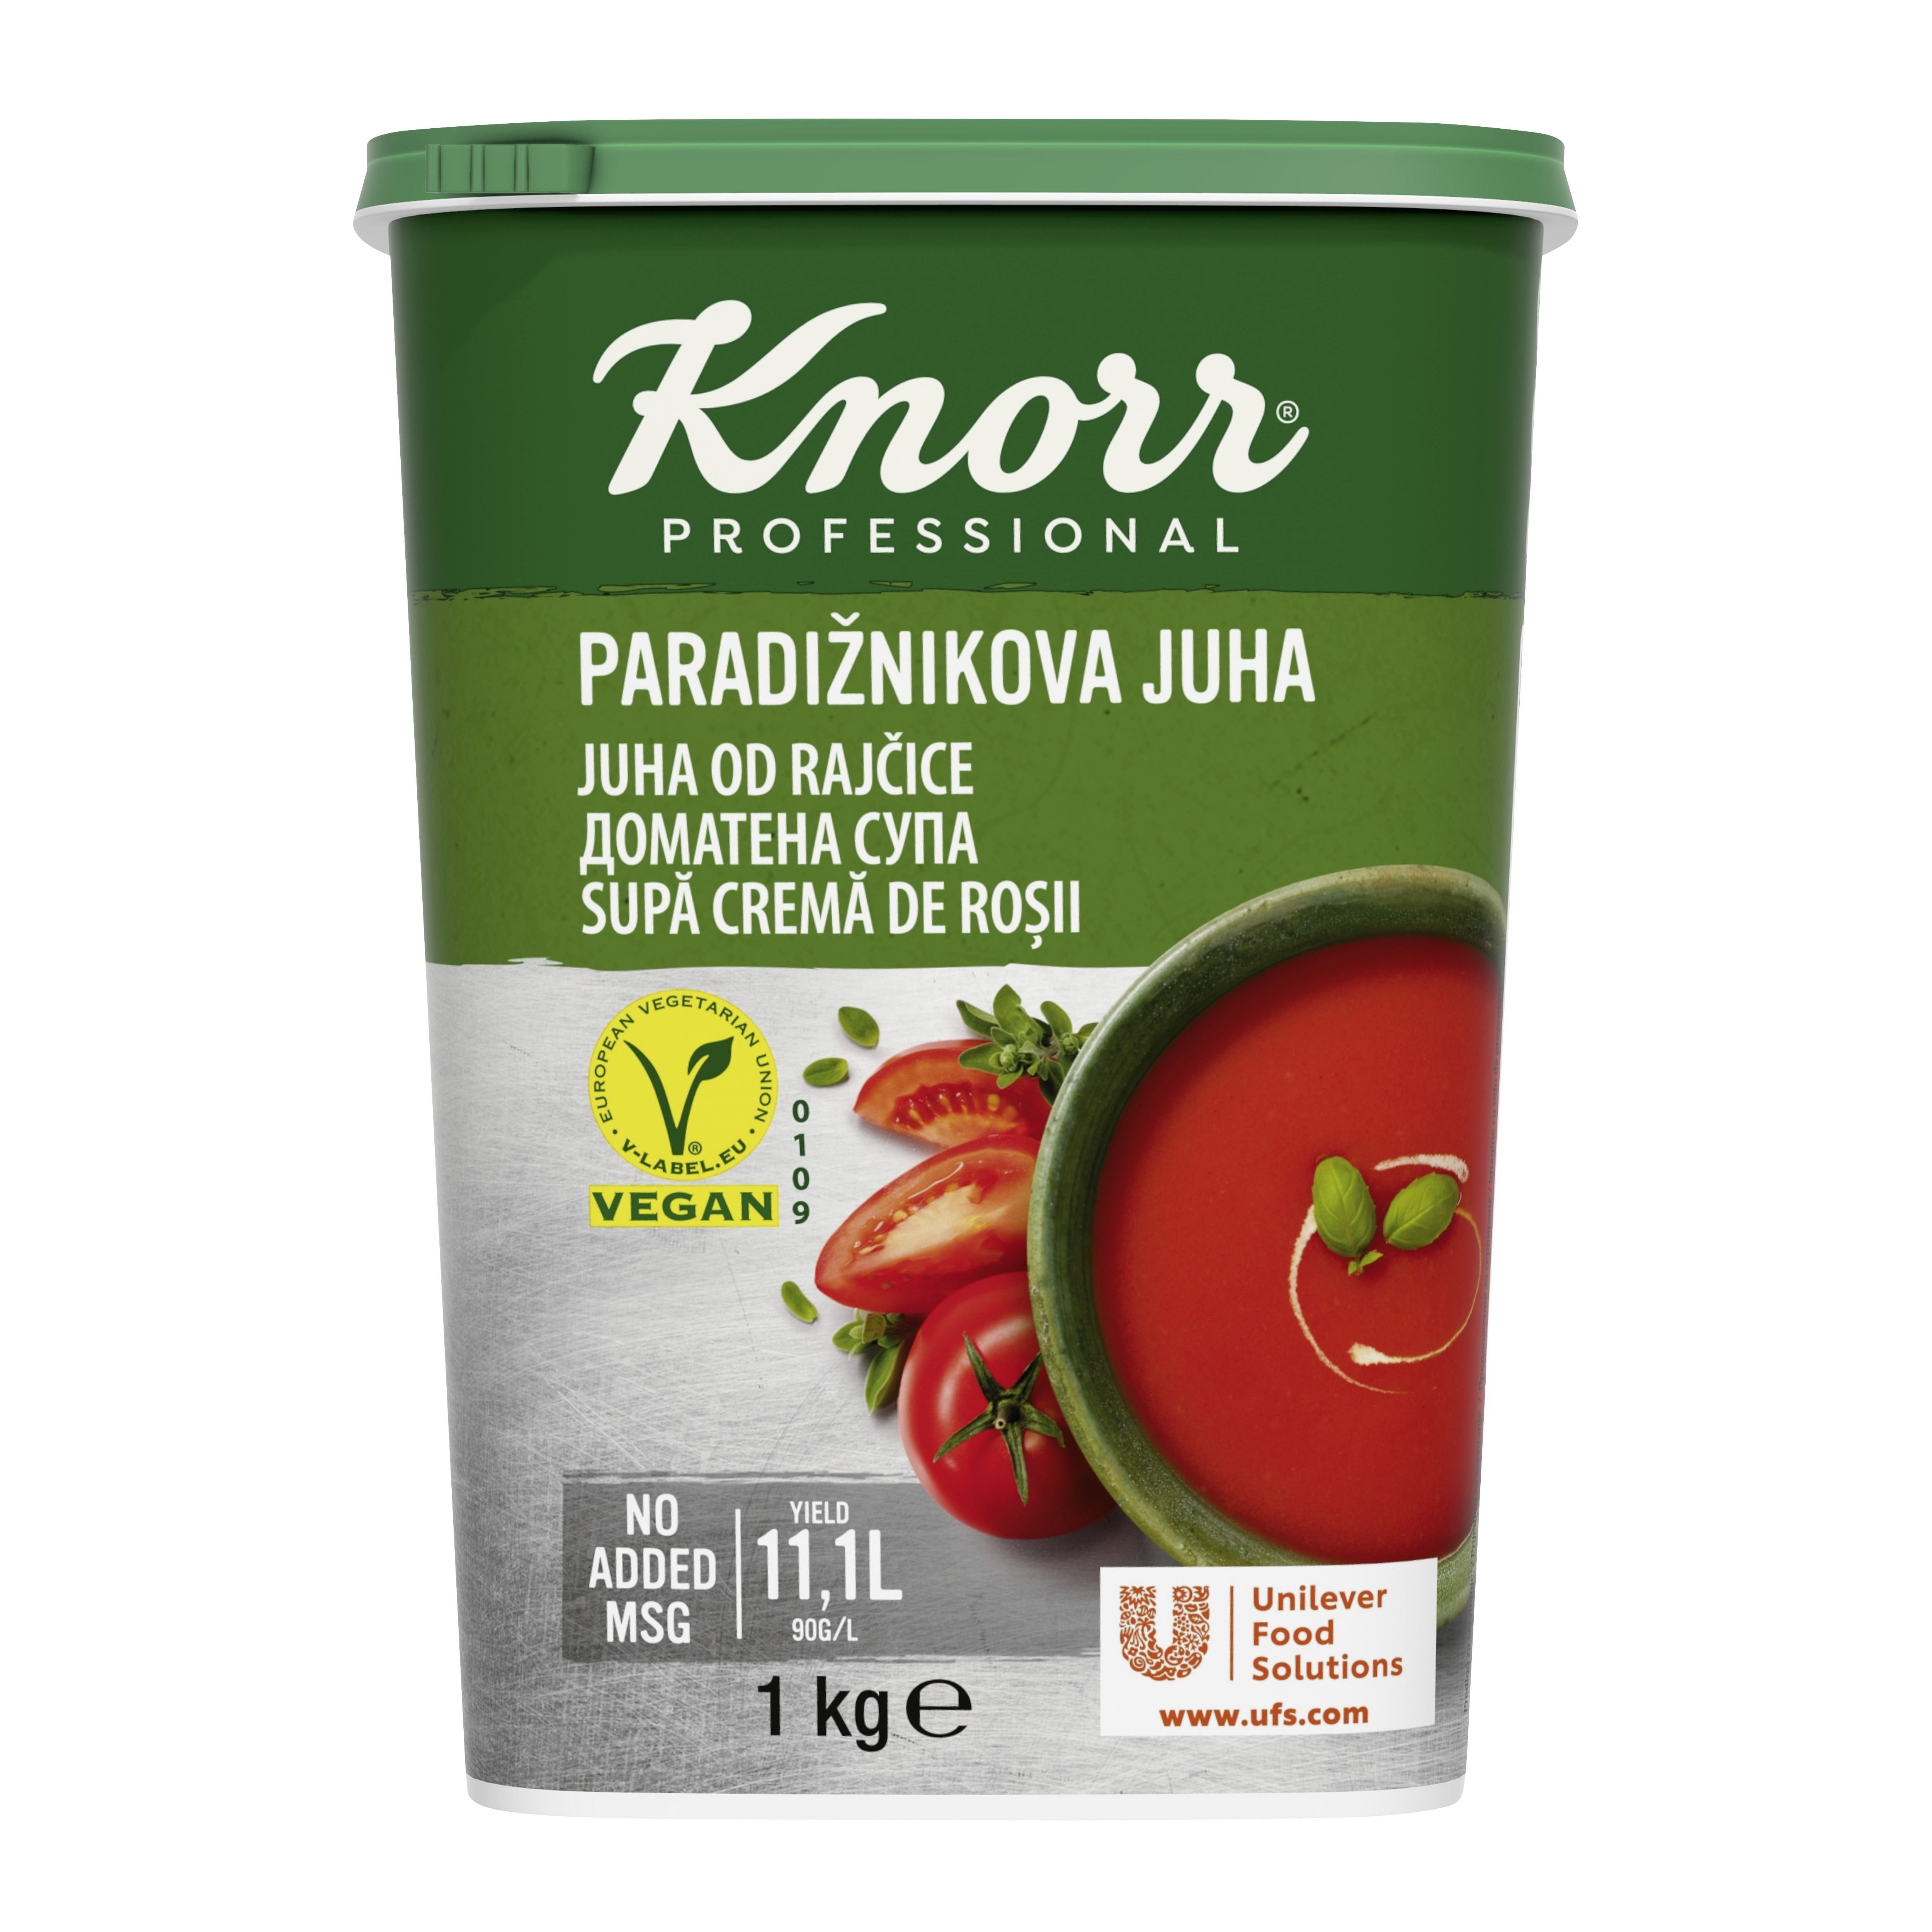 Knorr Juha od rajčice 1 kg - 